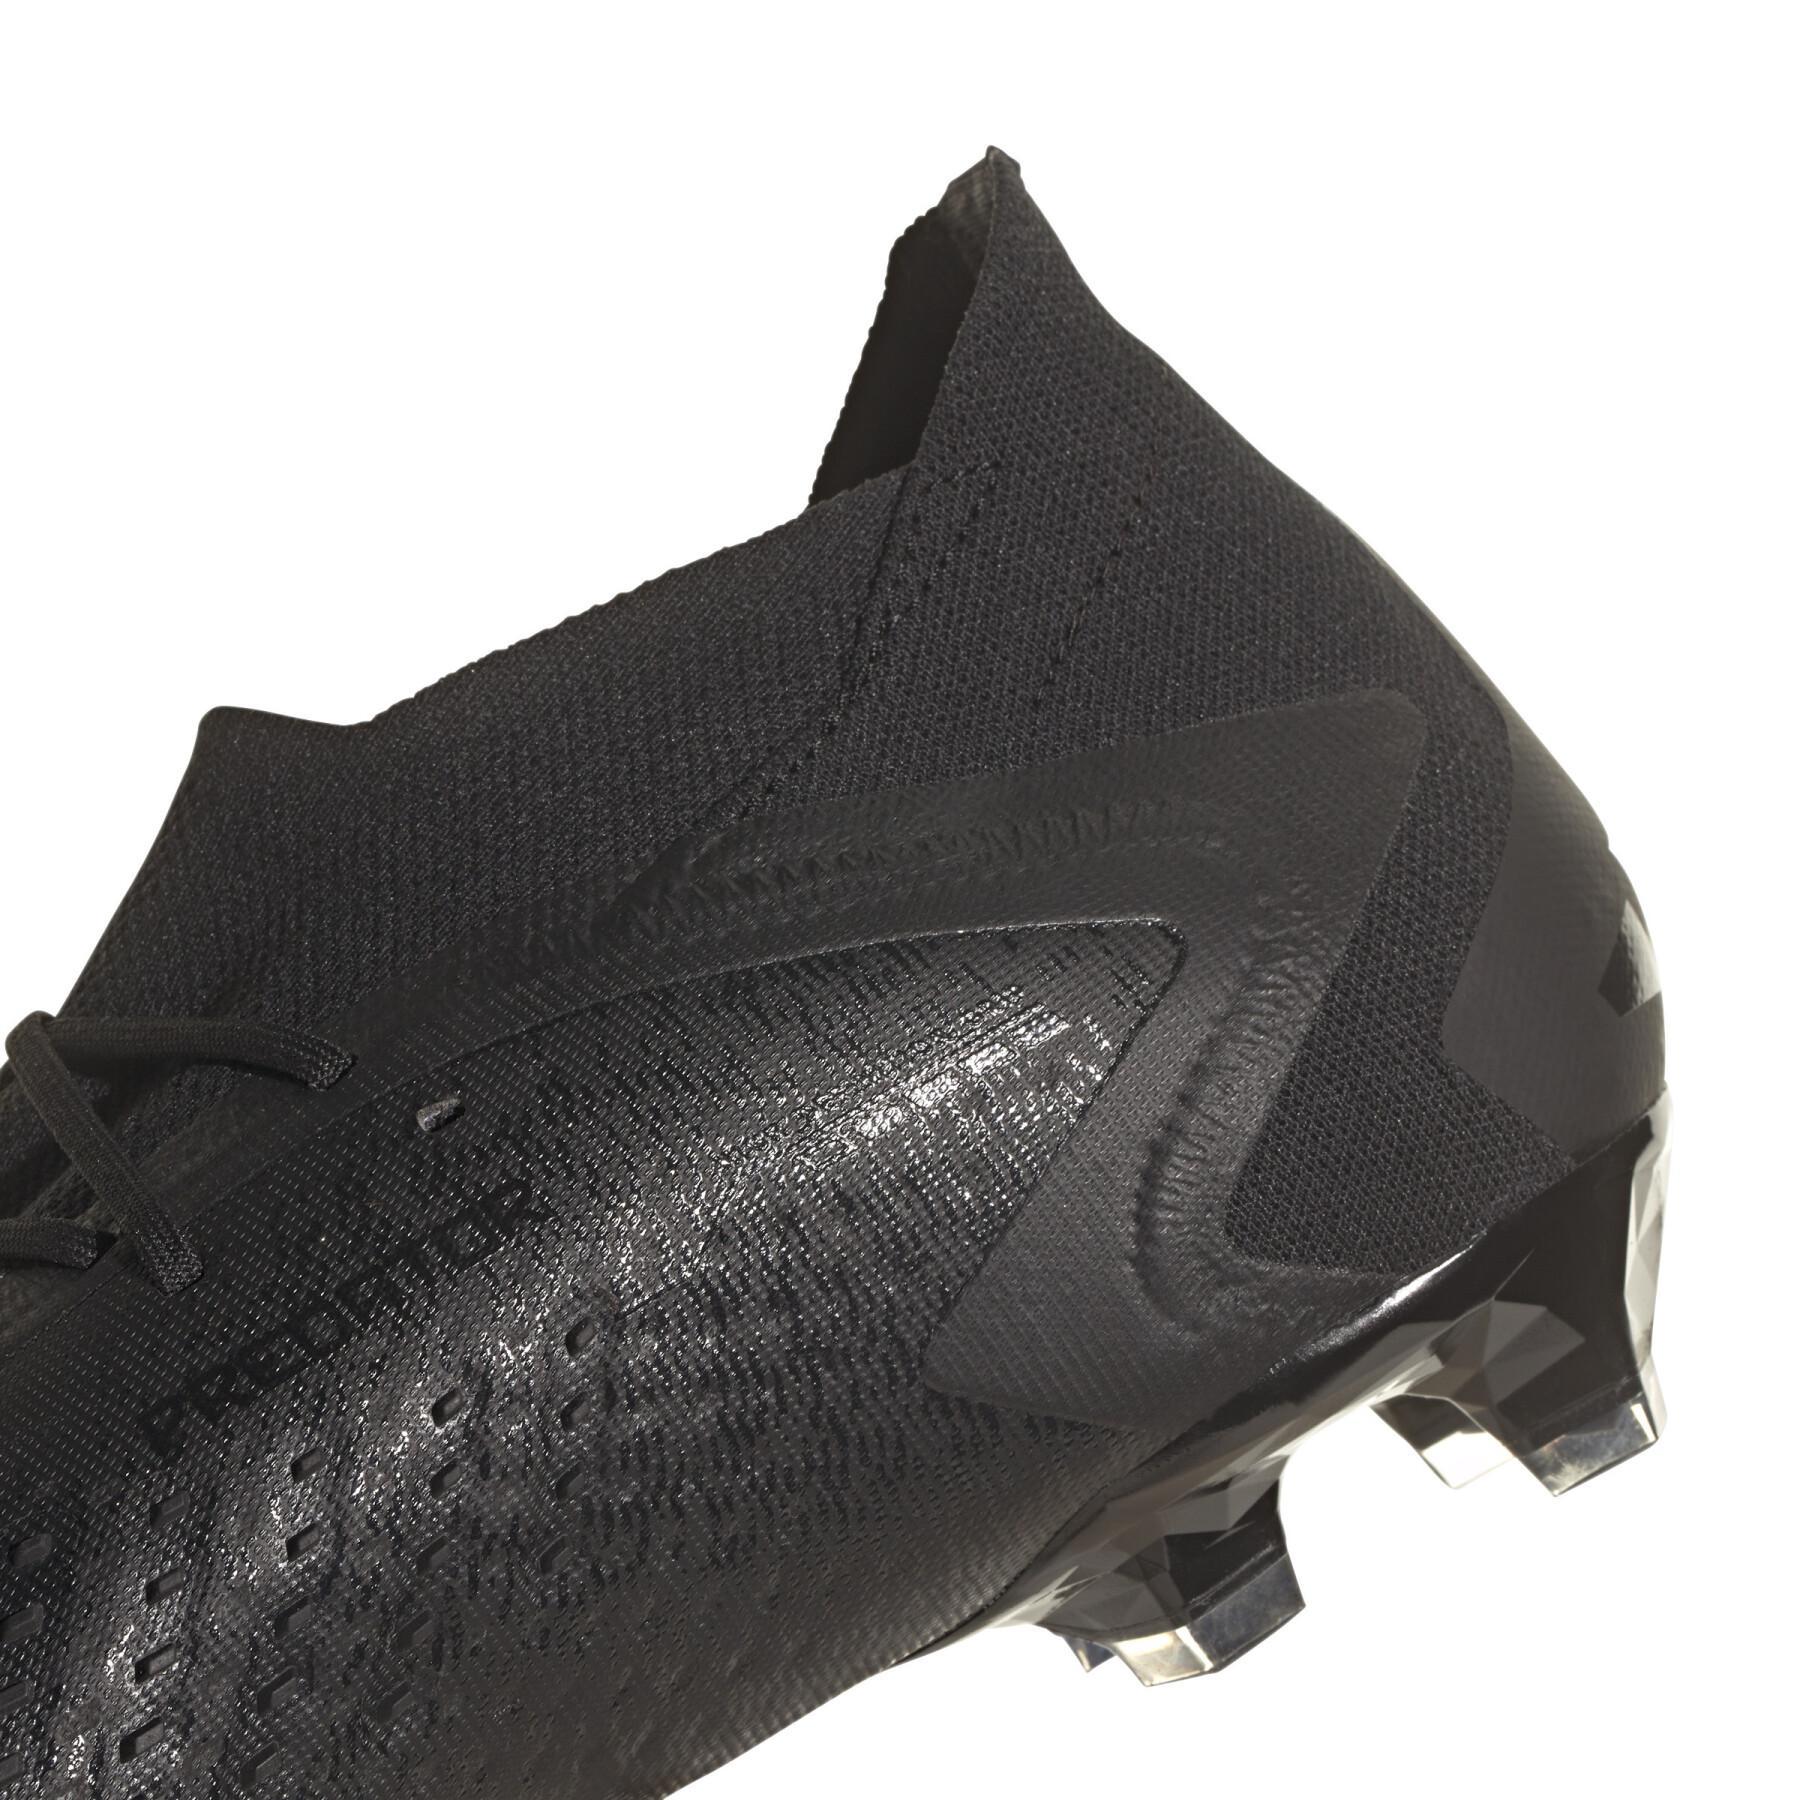 Buty piłkarskie adidas Predator Accuracy.1 - Nightstrike Pack